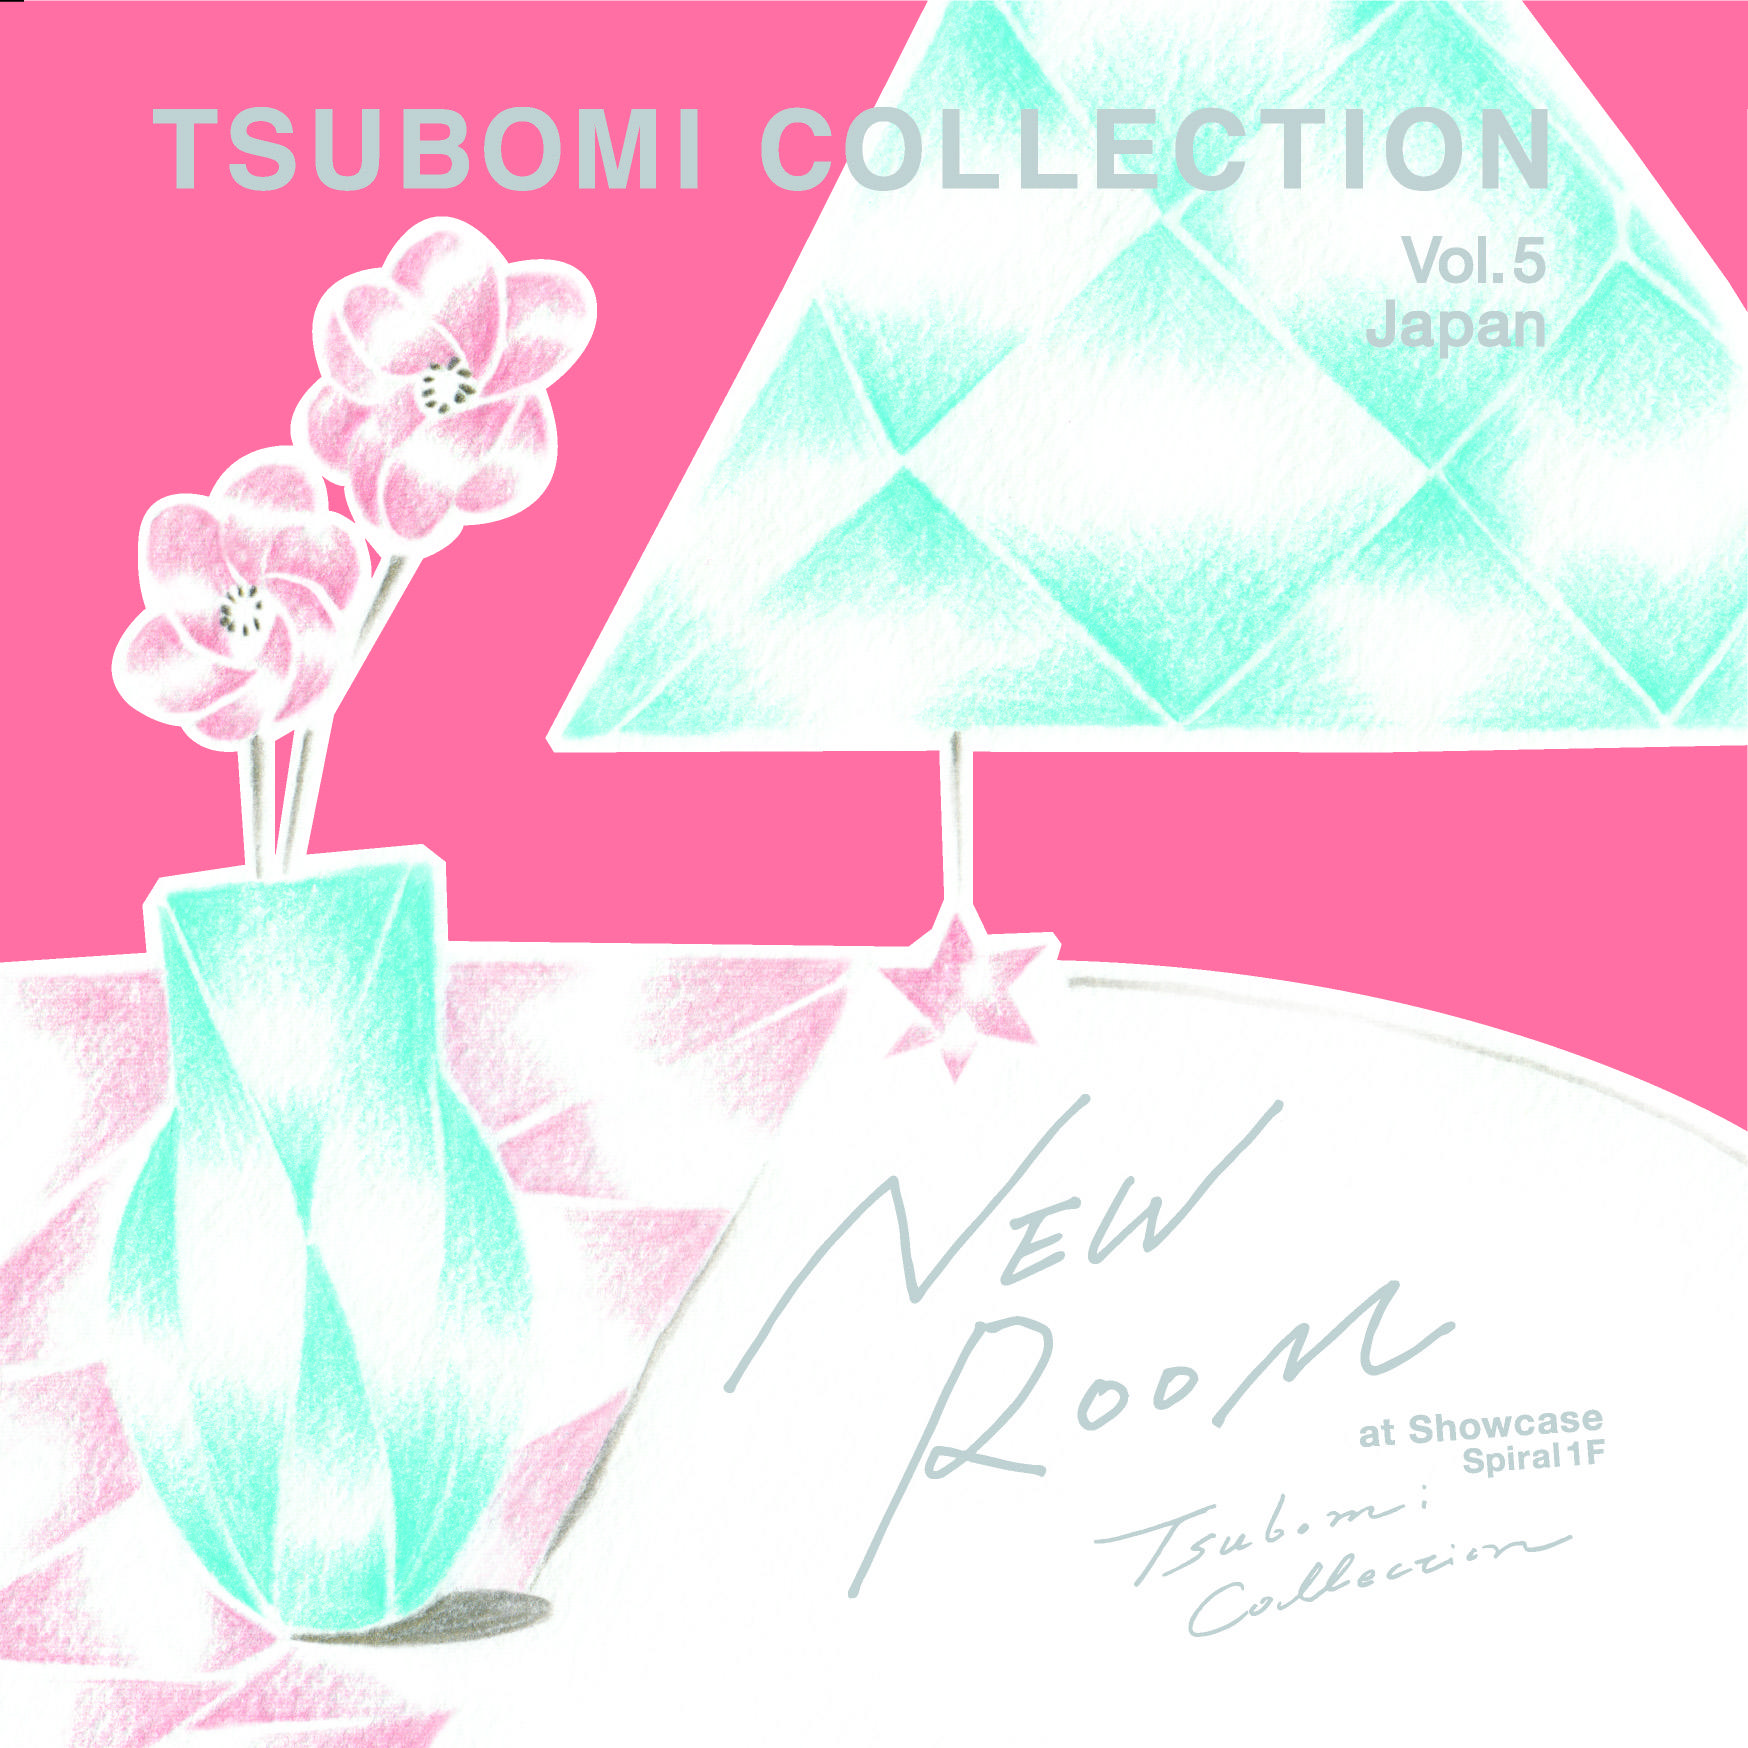 在学生や若手の卒業生が新生活の在宅時間を彩る作品を展示販売するプロジェクト「Tsubomi Collection Vol.5 Japan NEW ROOM」を開催